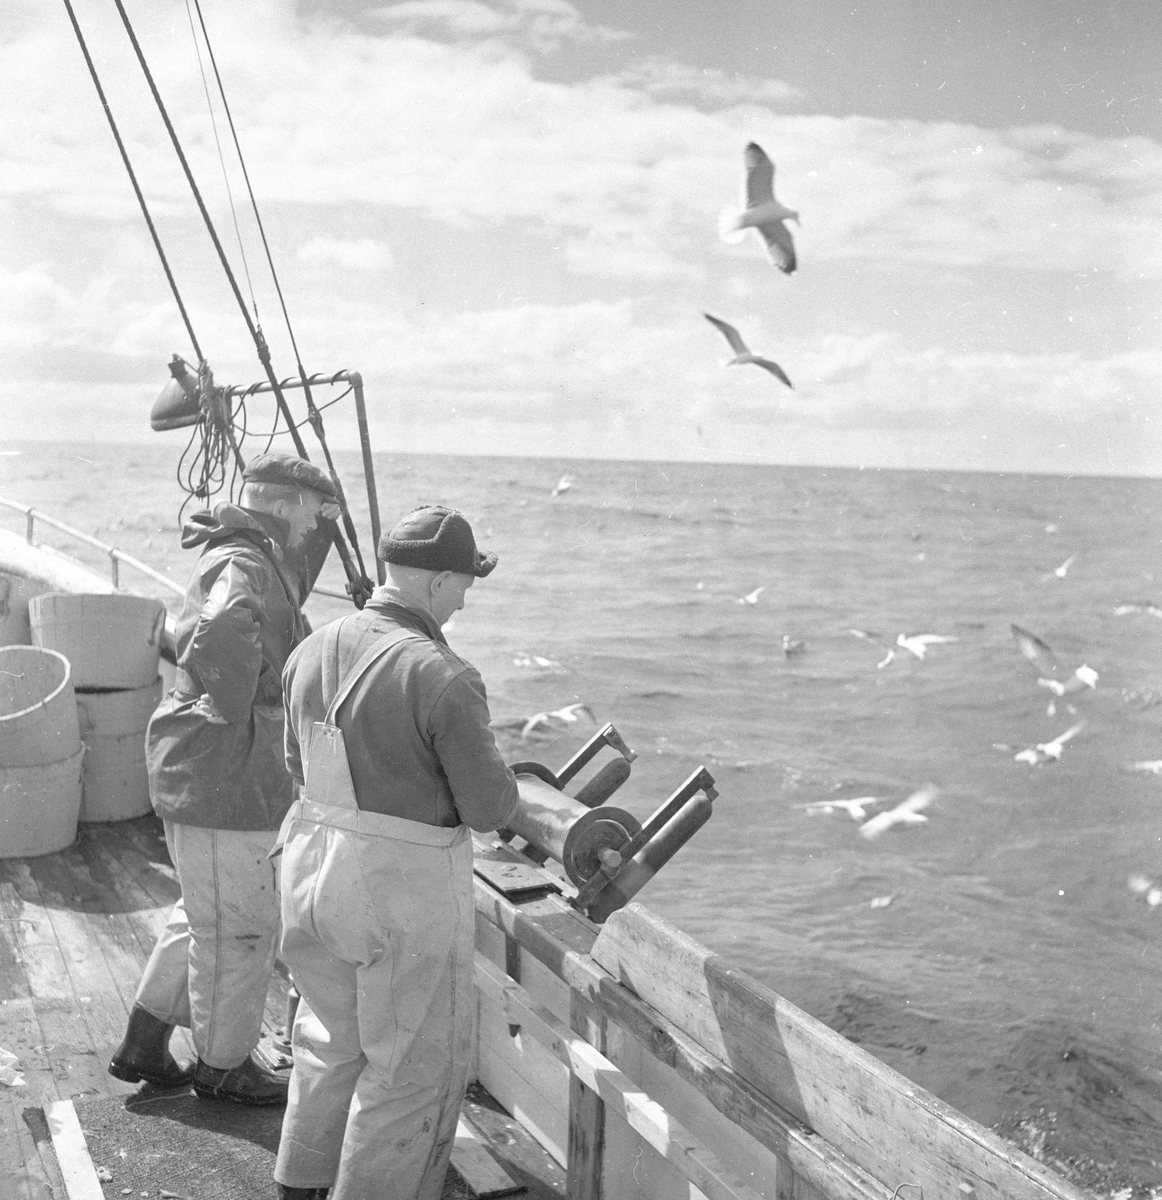 Pigghåfiske på Shetland.
Shetland, 14-22. mai 1958, to fiskere ved relingen.